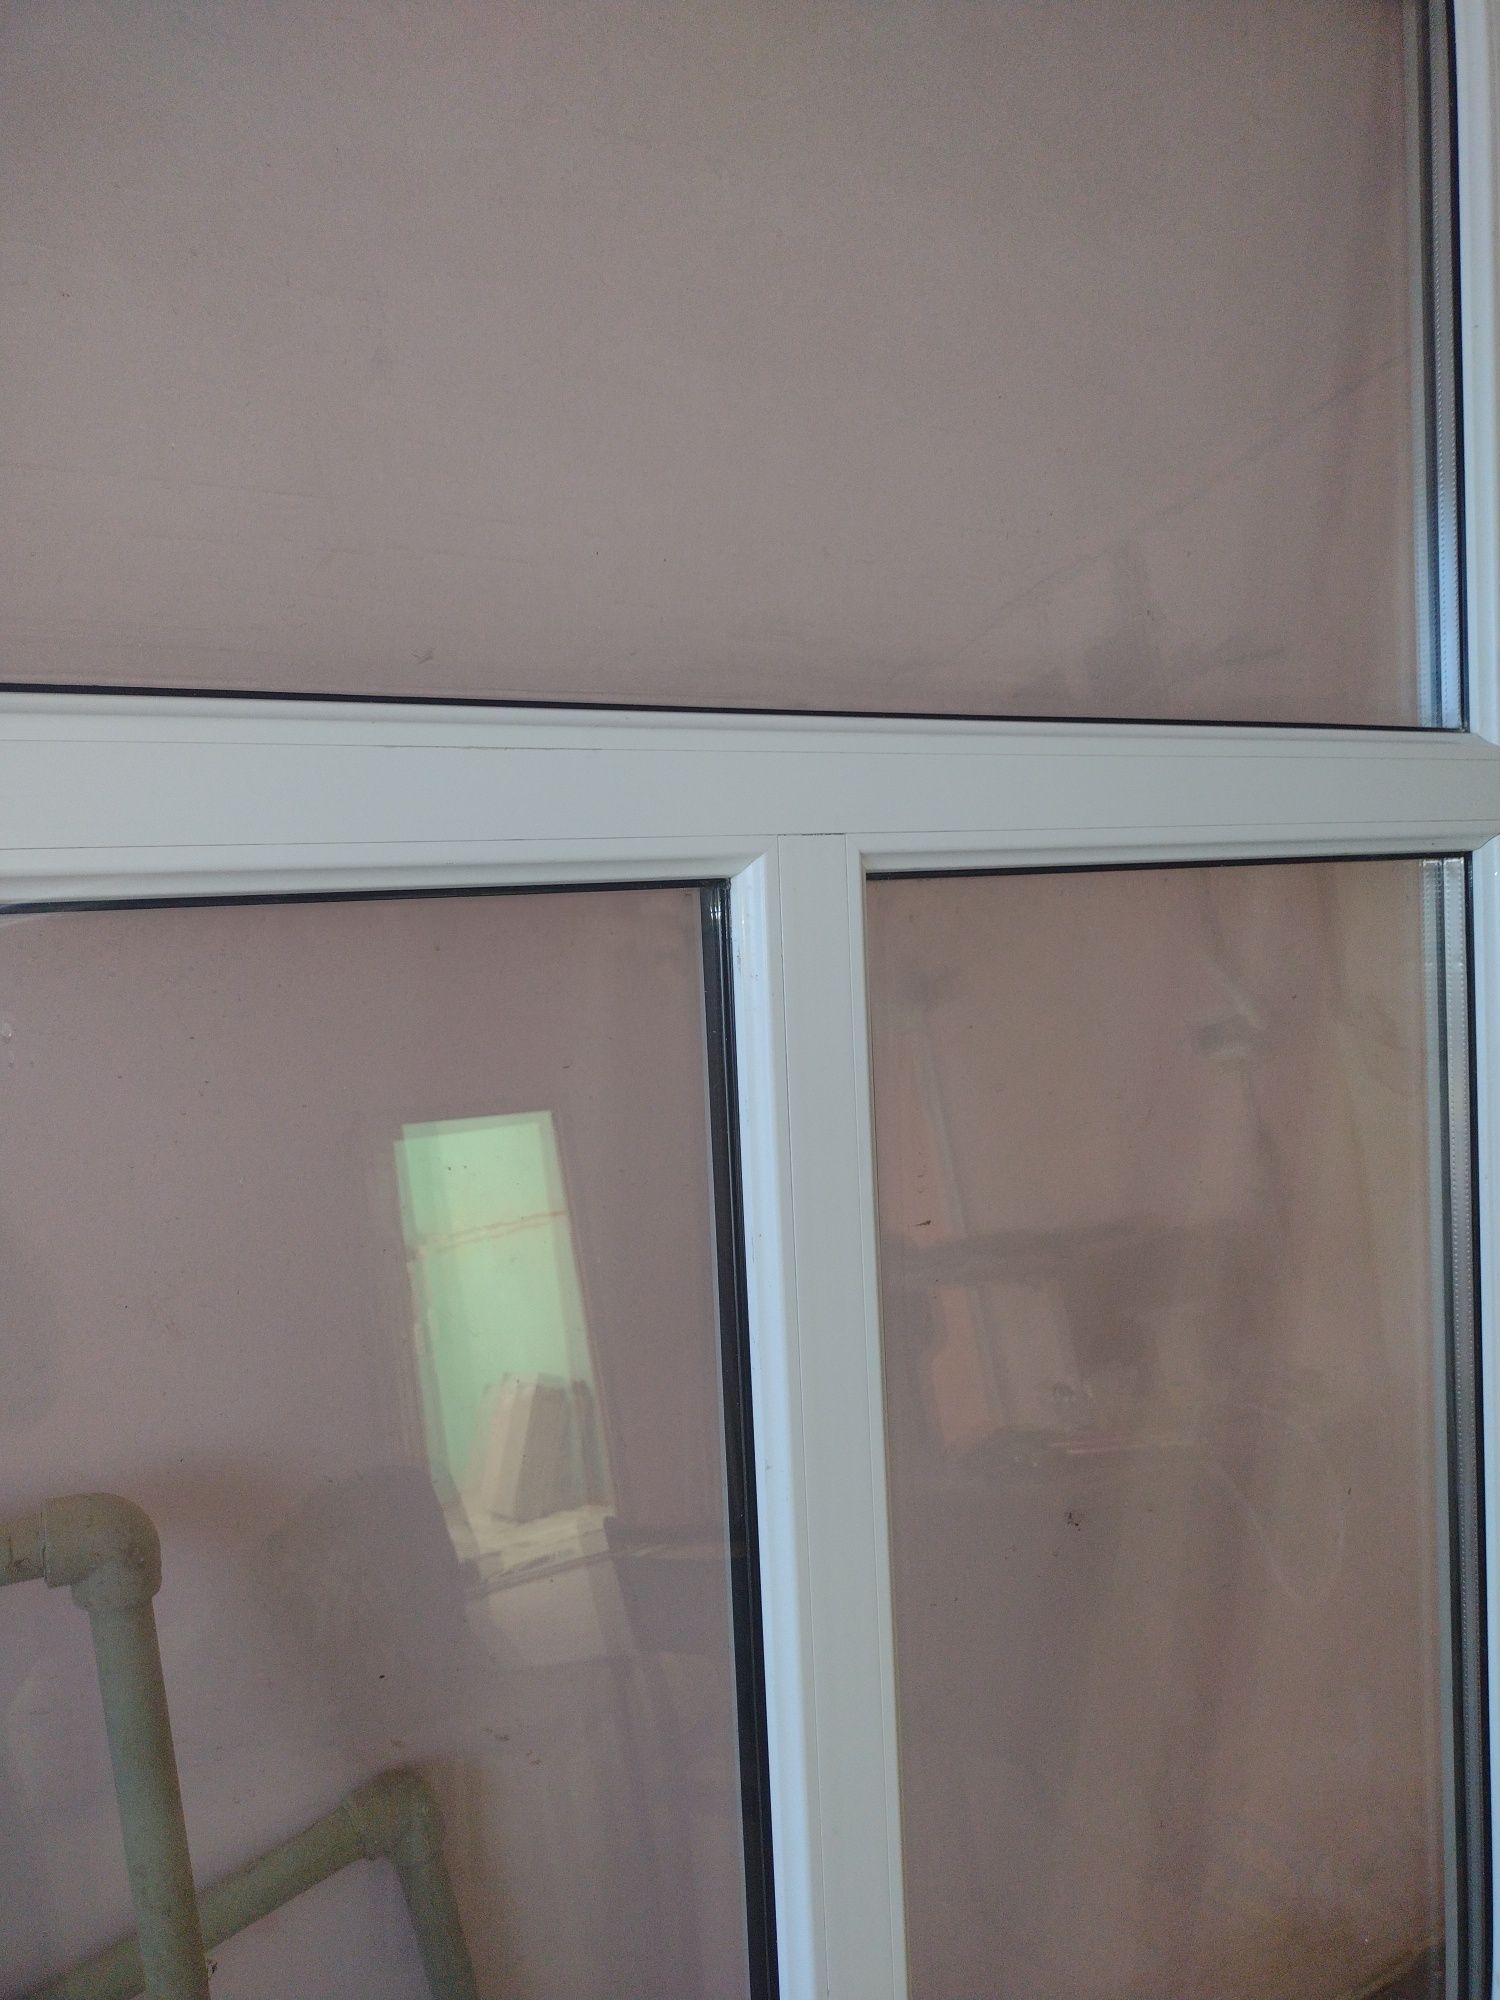 металопластикове вікно глухе 3 секції розмір 1,70м на 2,19м